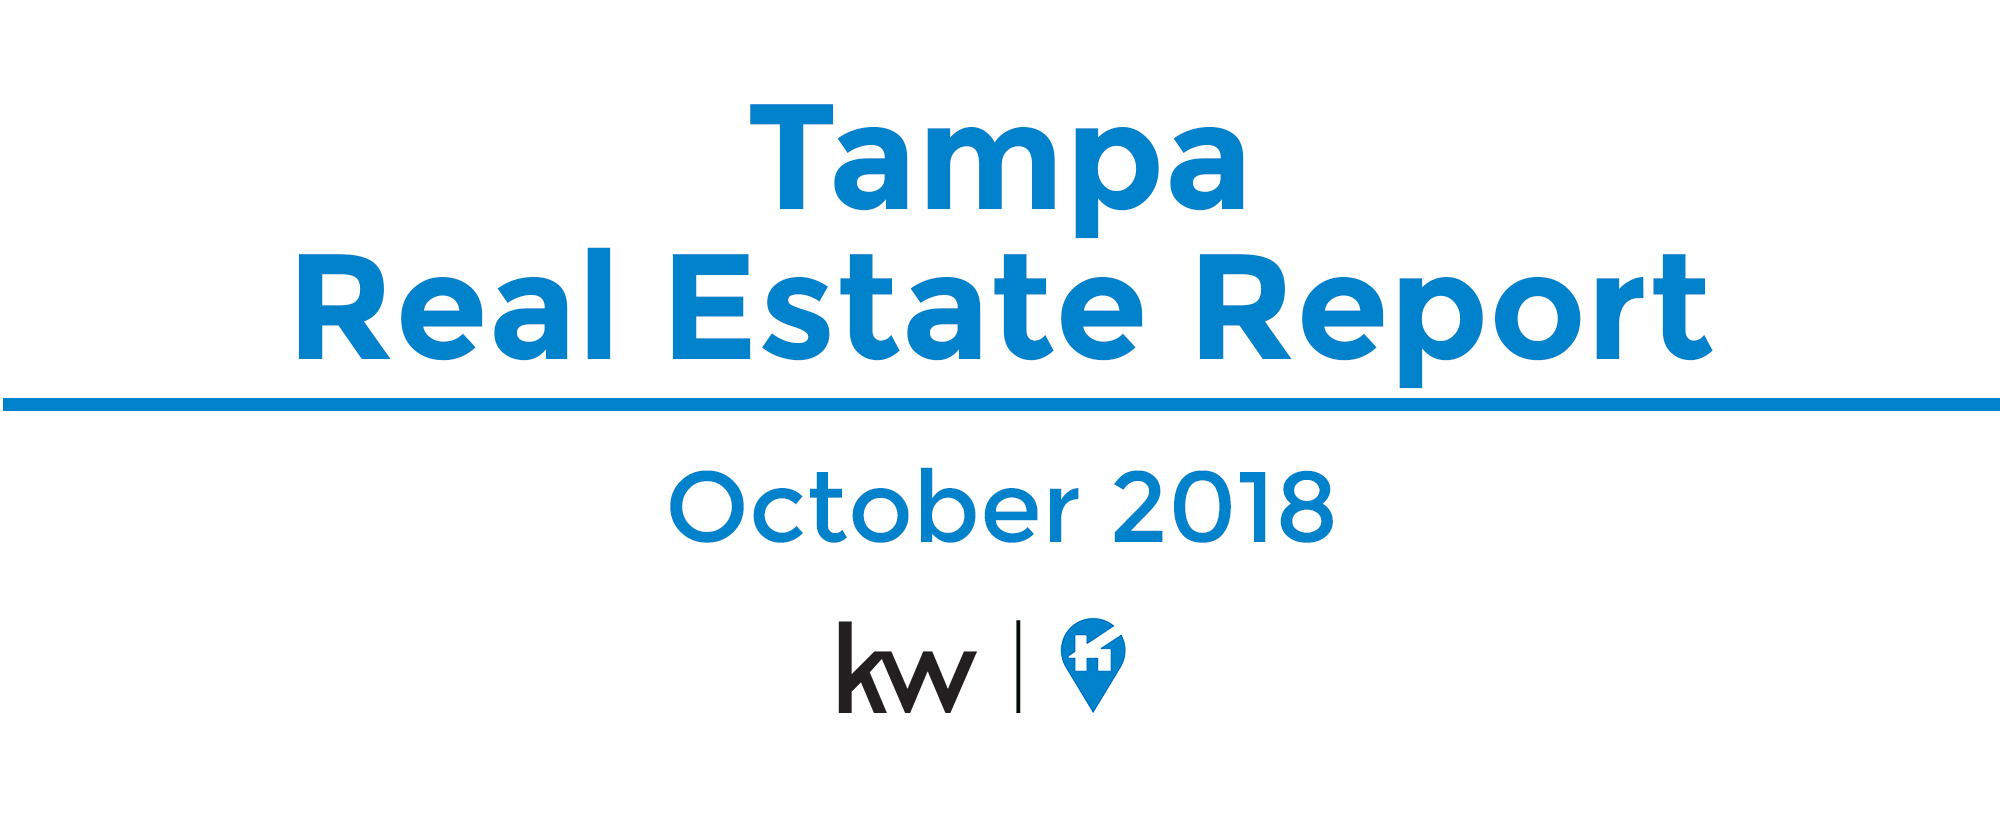 Tampa Real Estate Market Update - October 18